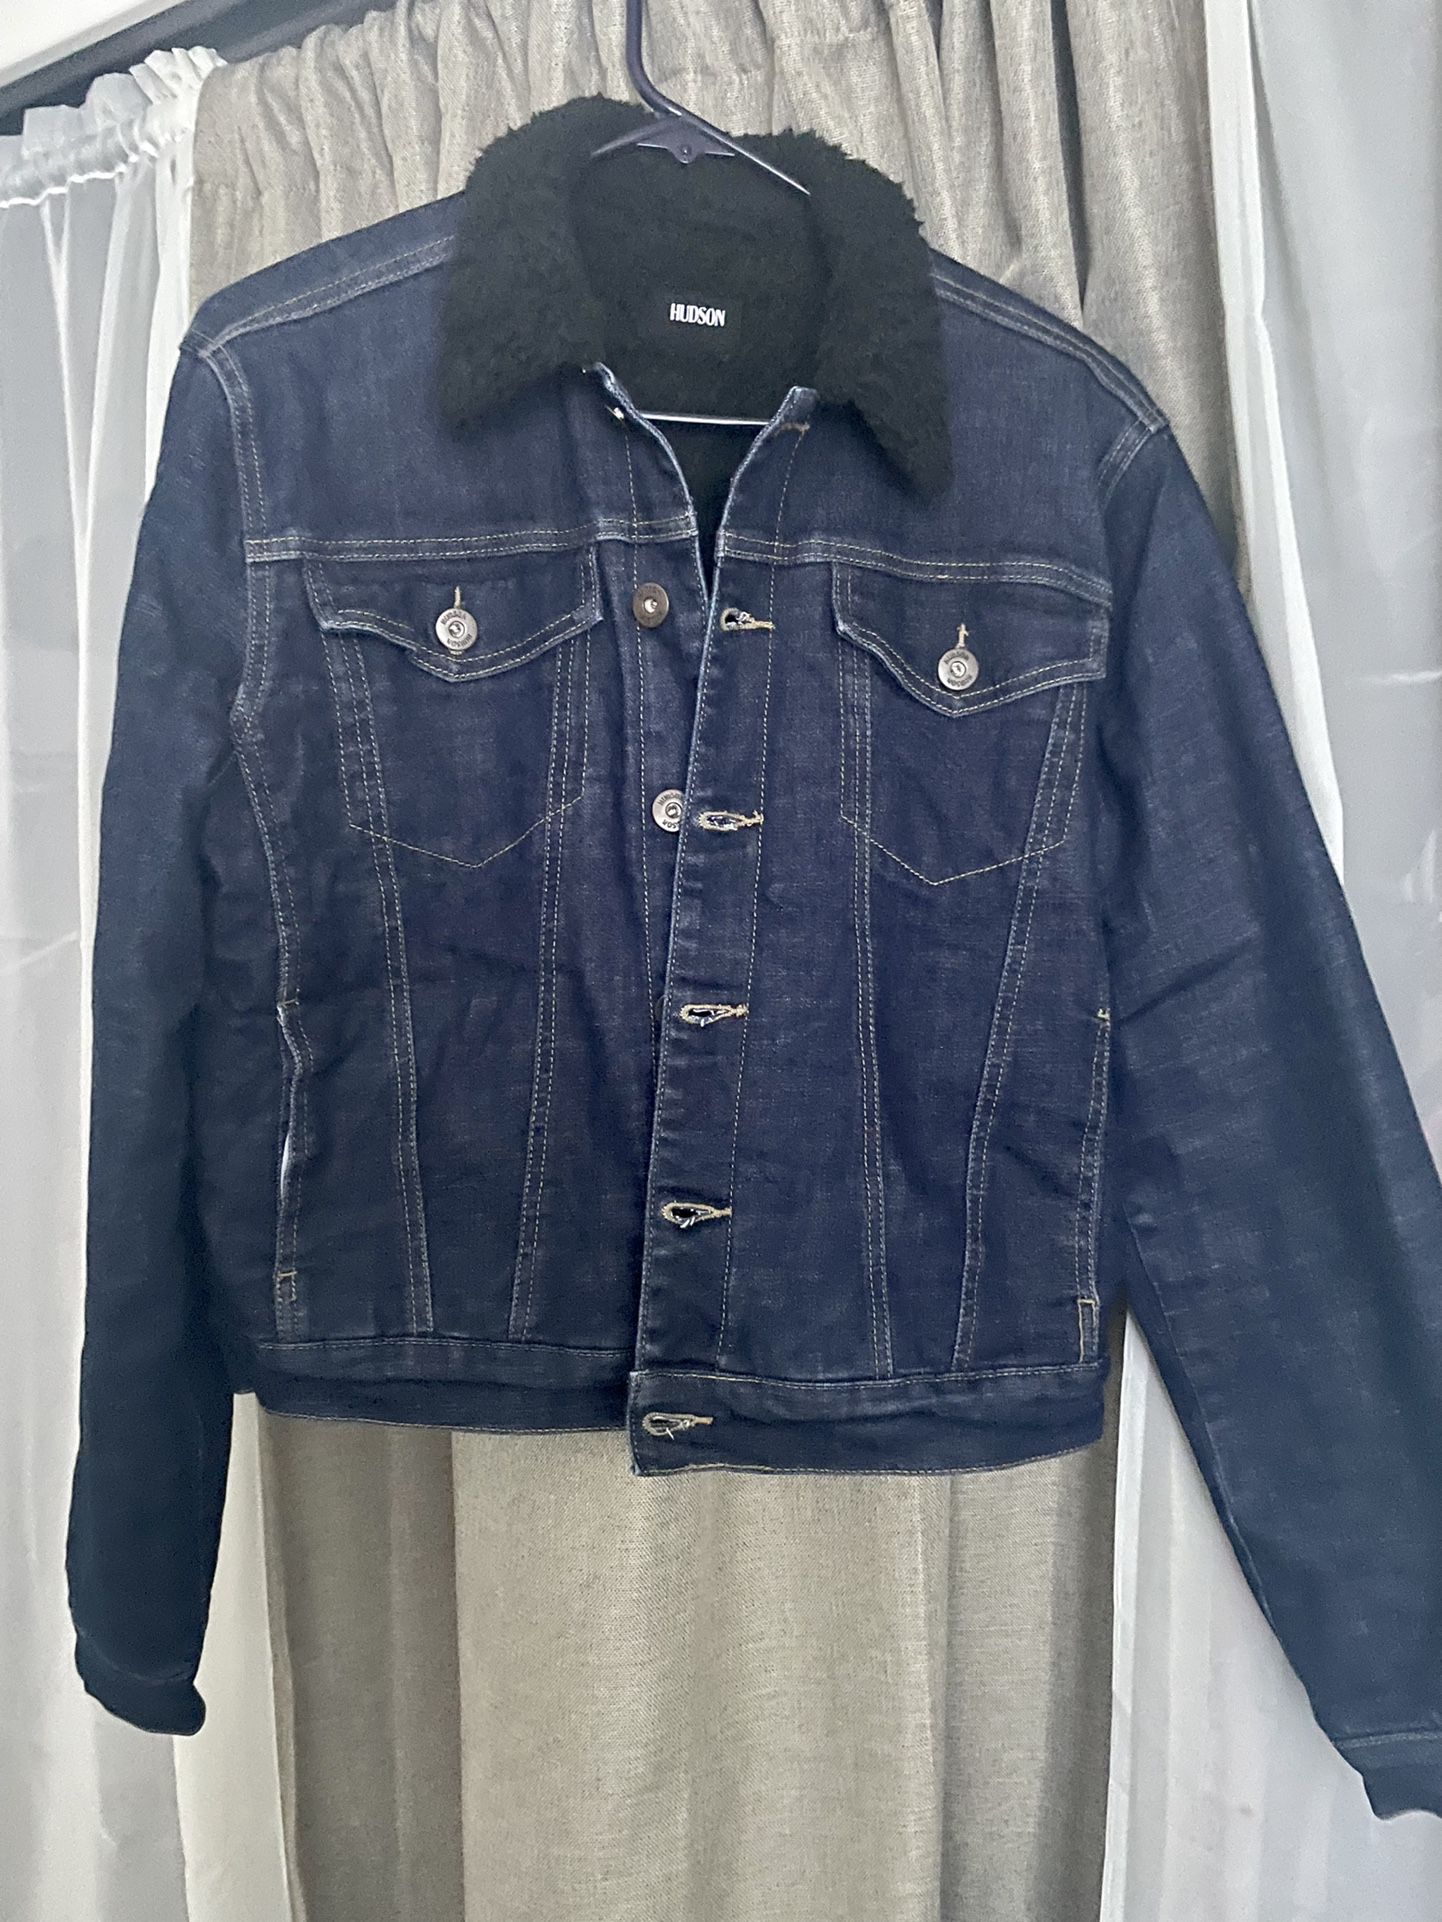 Hudson jeans Sherpa lined jean jacket L